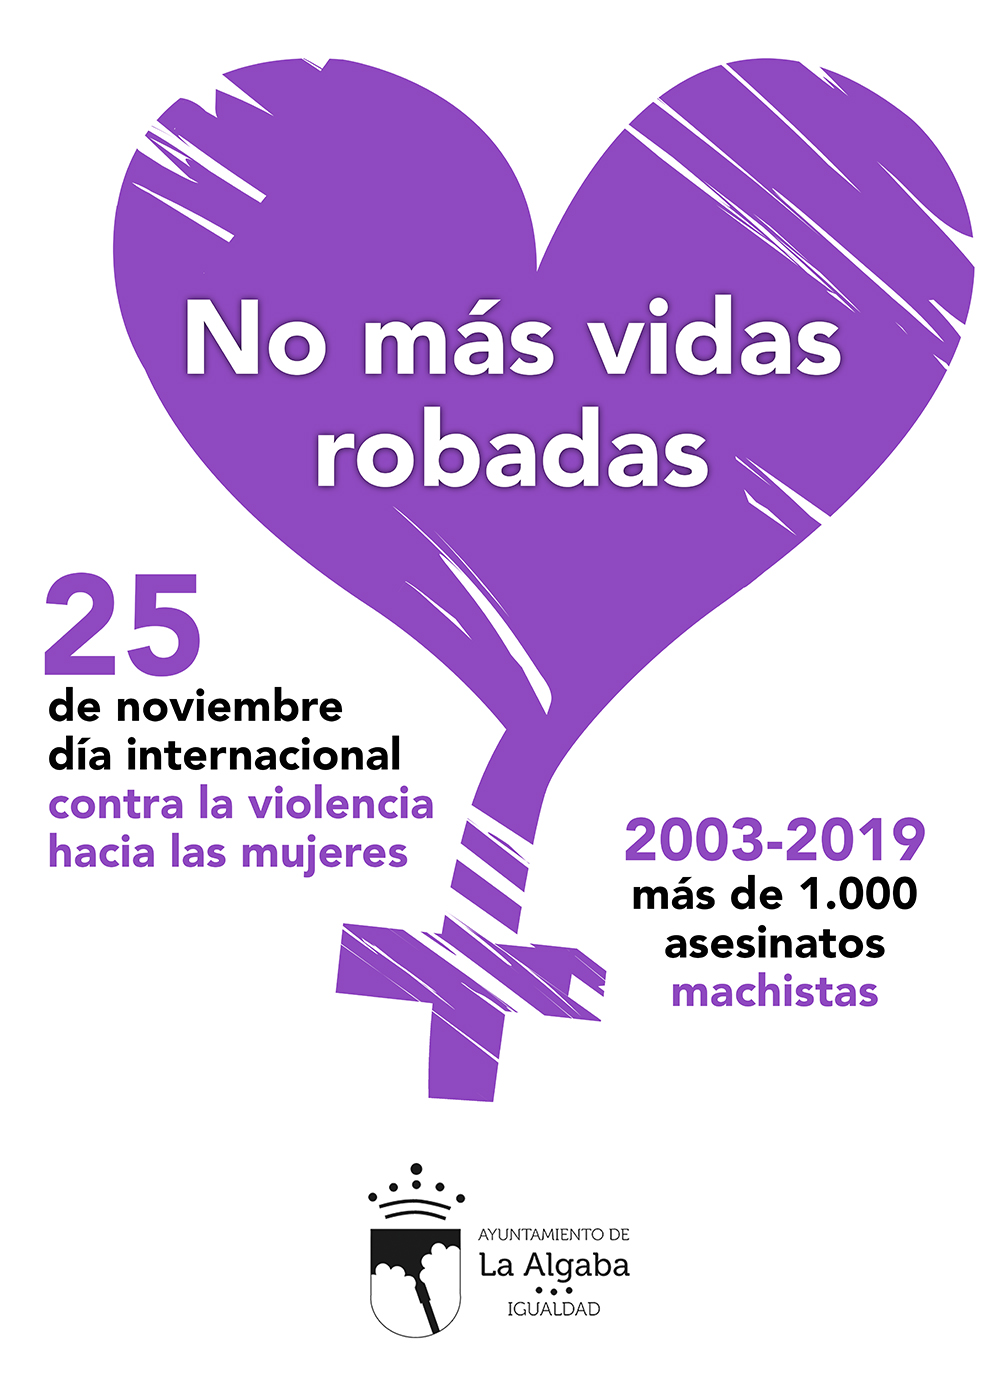 La Algaba recordará el lunes a las 1027 mujeres víctimas de la violencia machista para que no haya &quot;Más vidas robadas&quot;